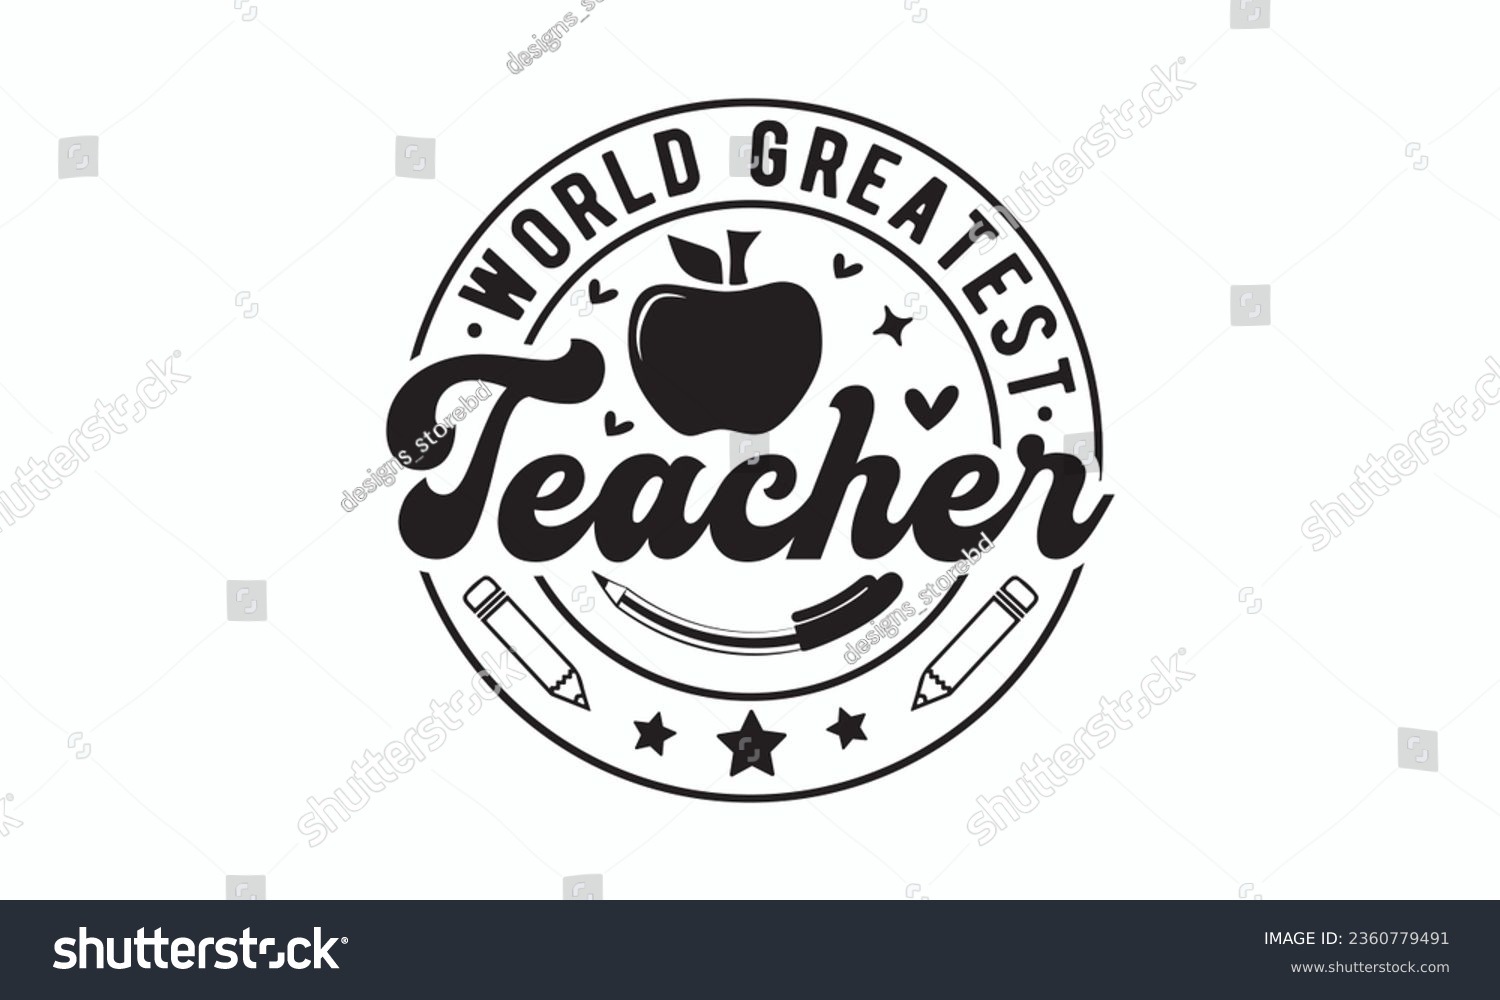 SVG of World greatest teacher svg, Teacher SVG, Teacher T-shirt, Teacher Quotes T-shirt bundle, Back To School svg, Hello School Shirt, School Shirt for Kids, Silhouette, Cricut Cut Files svg